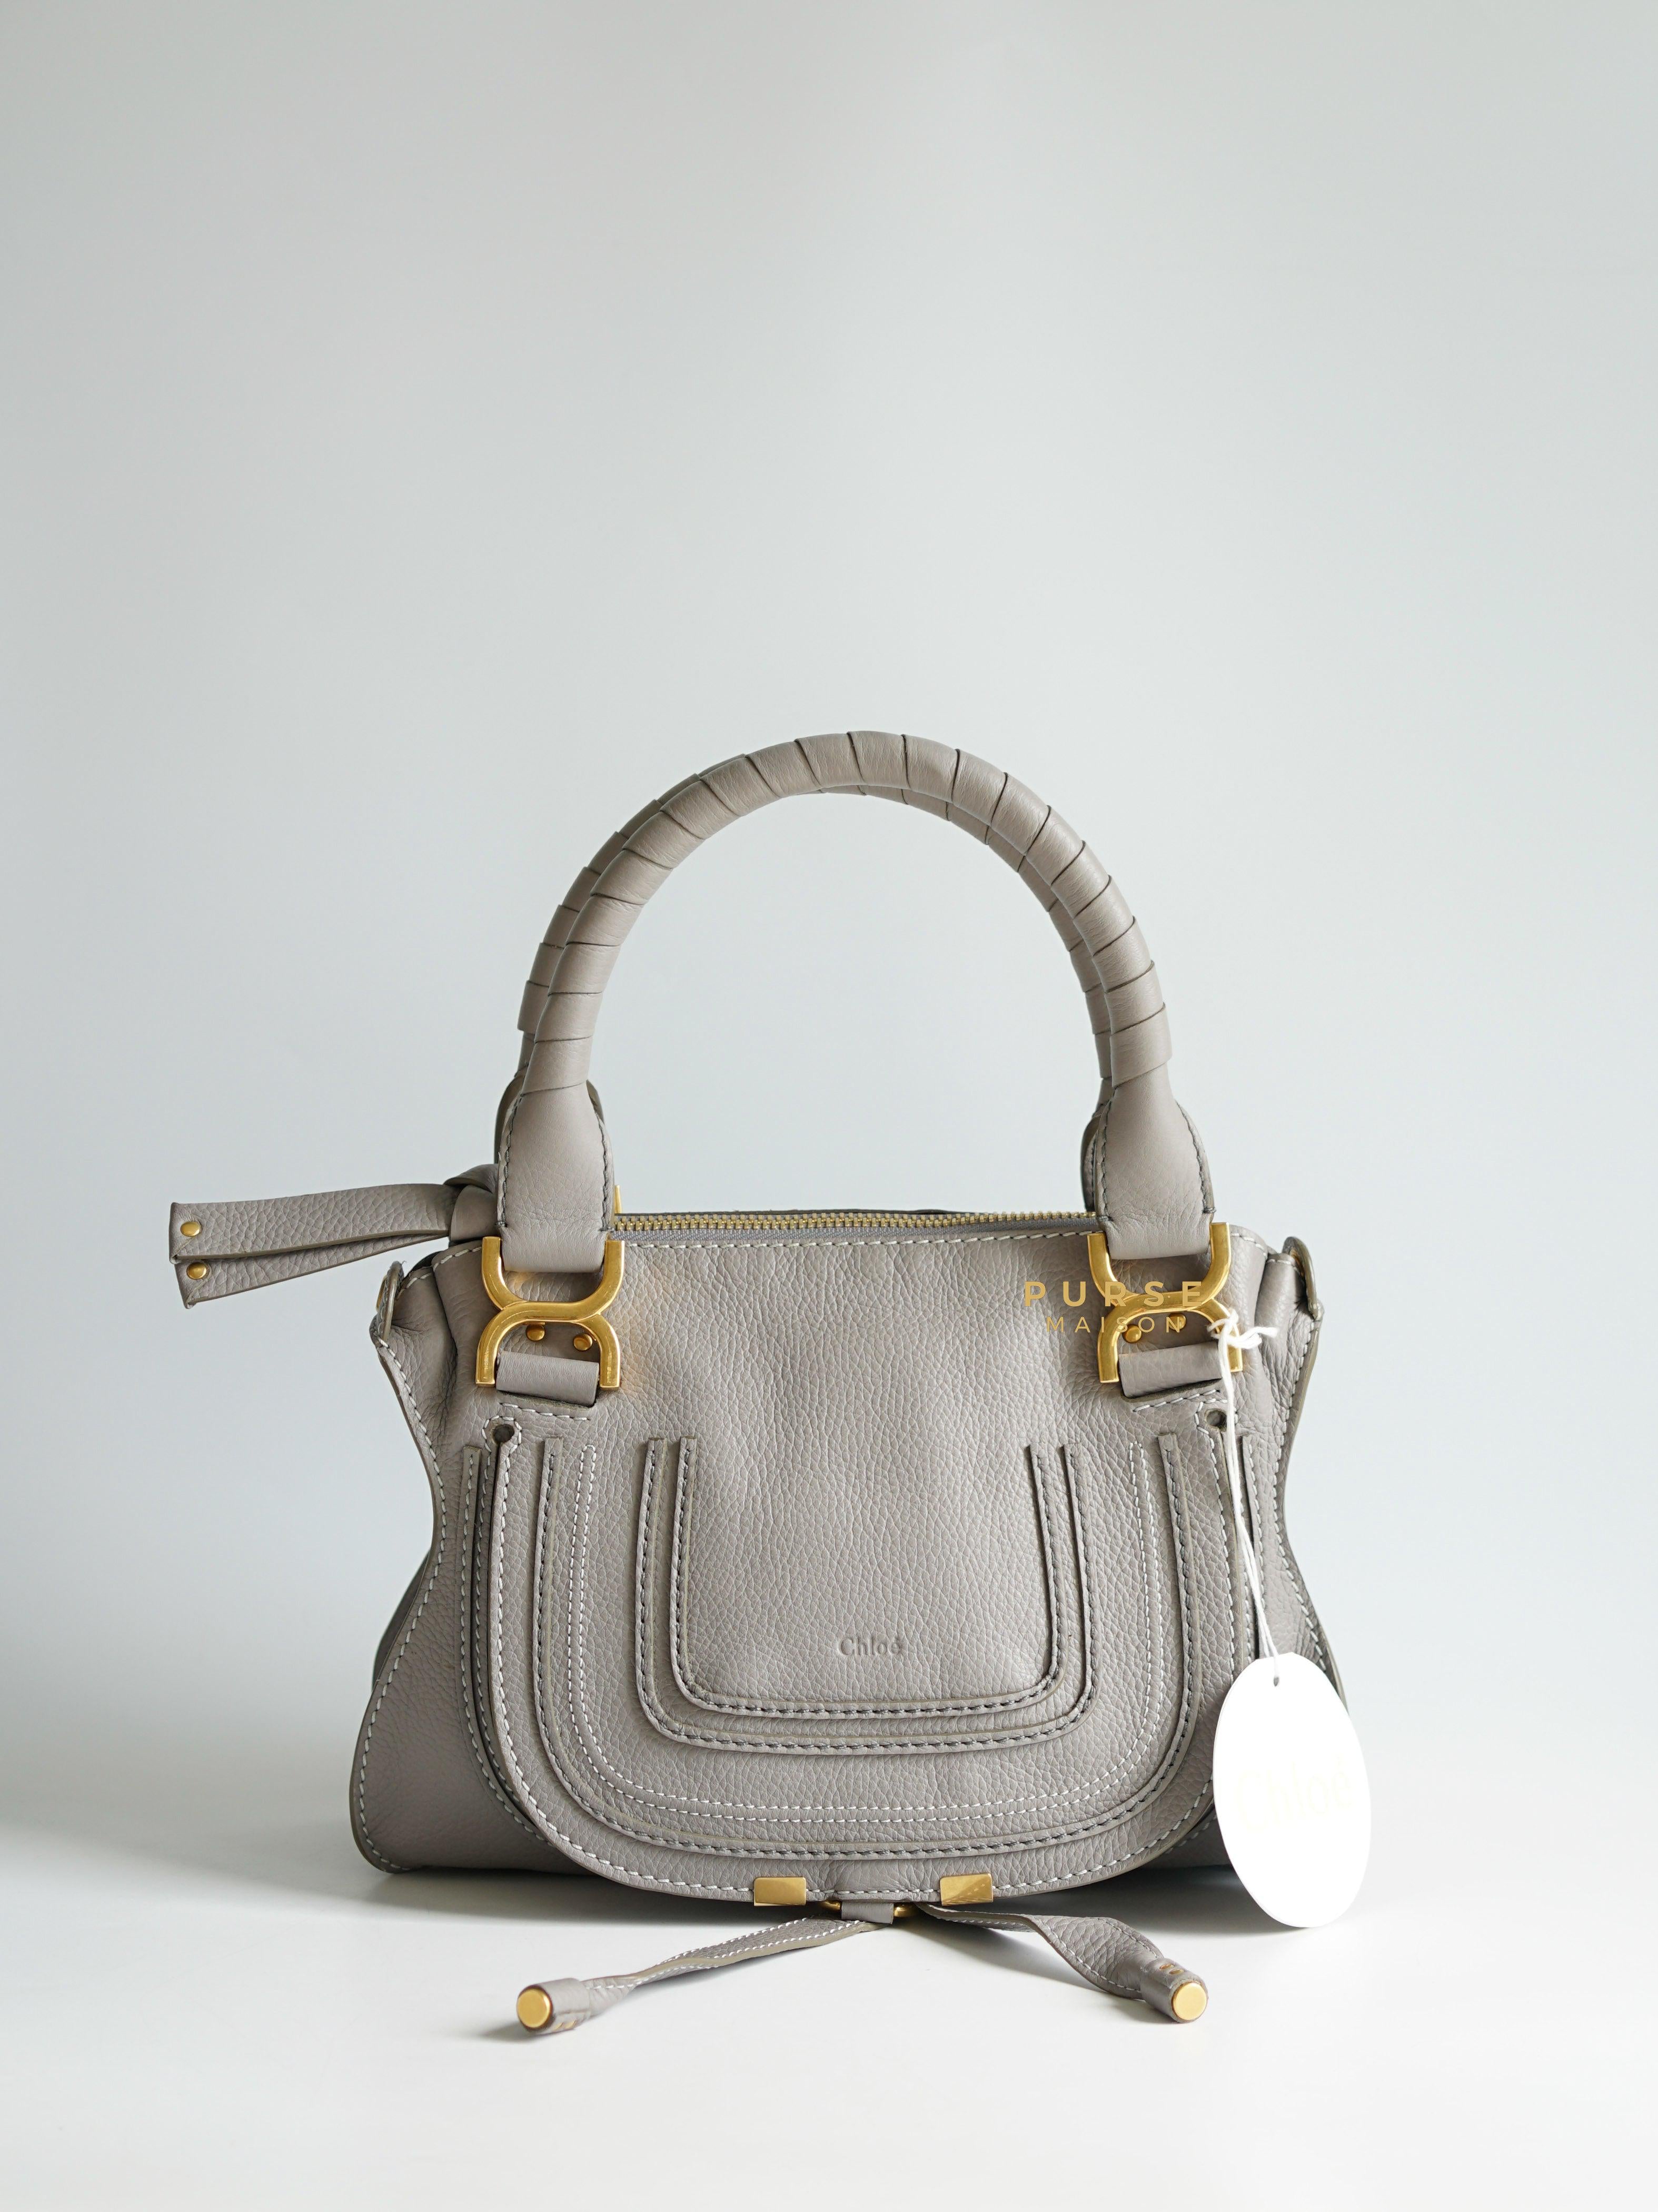 Chloe Marcie Cashmere Gray Bag | Purse Maison Luxury Bags Shop